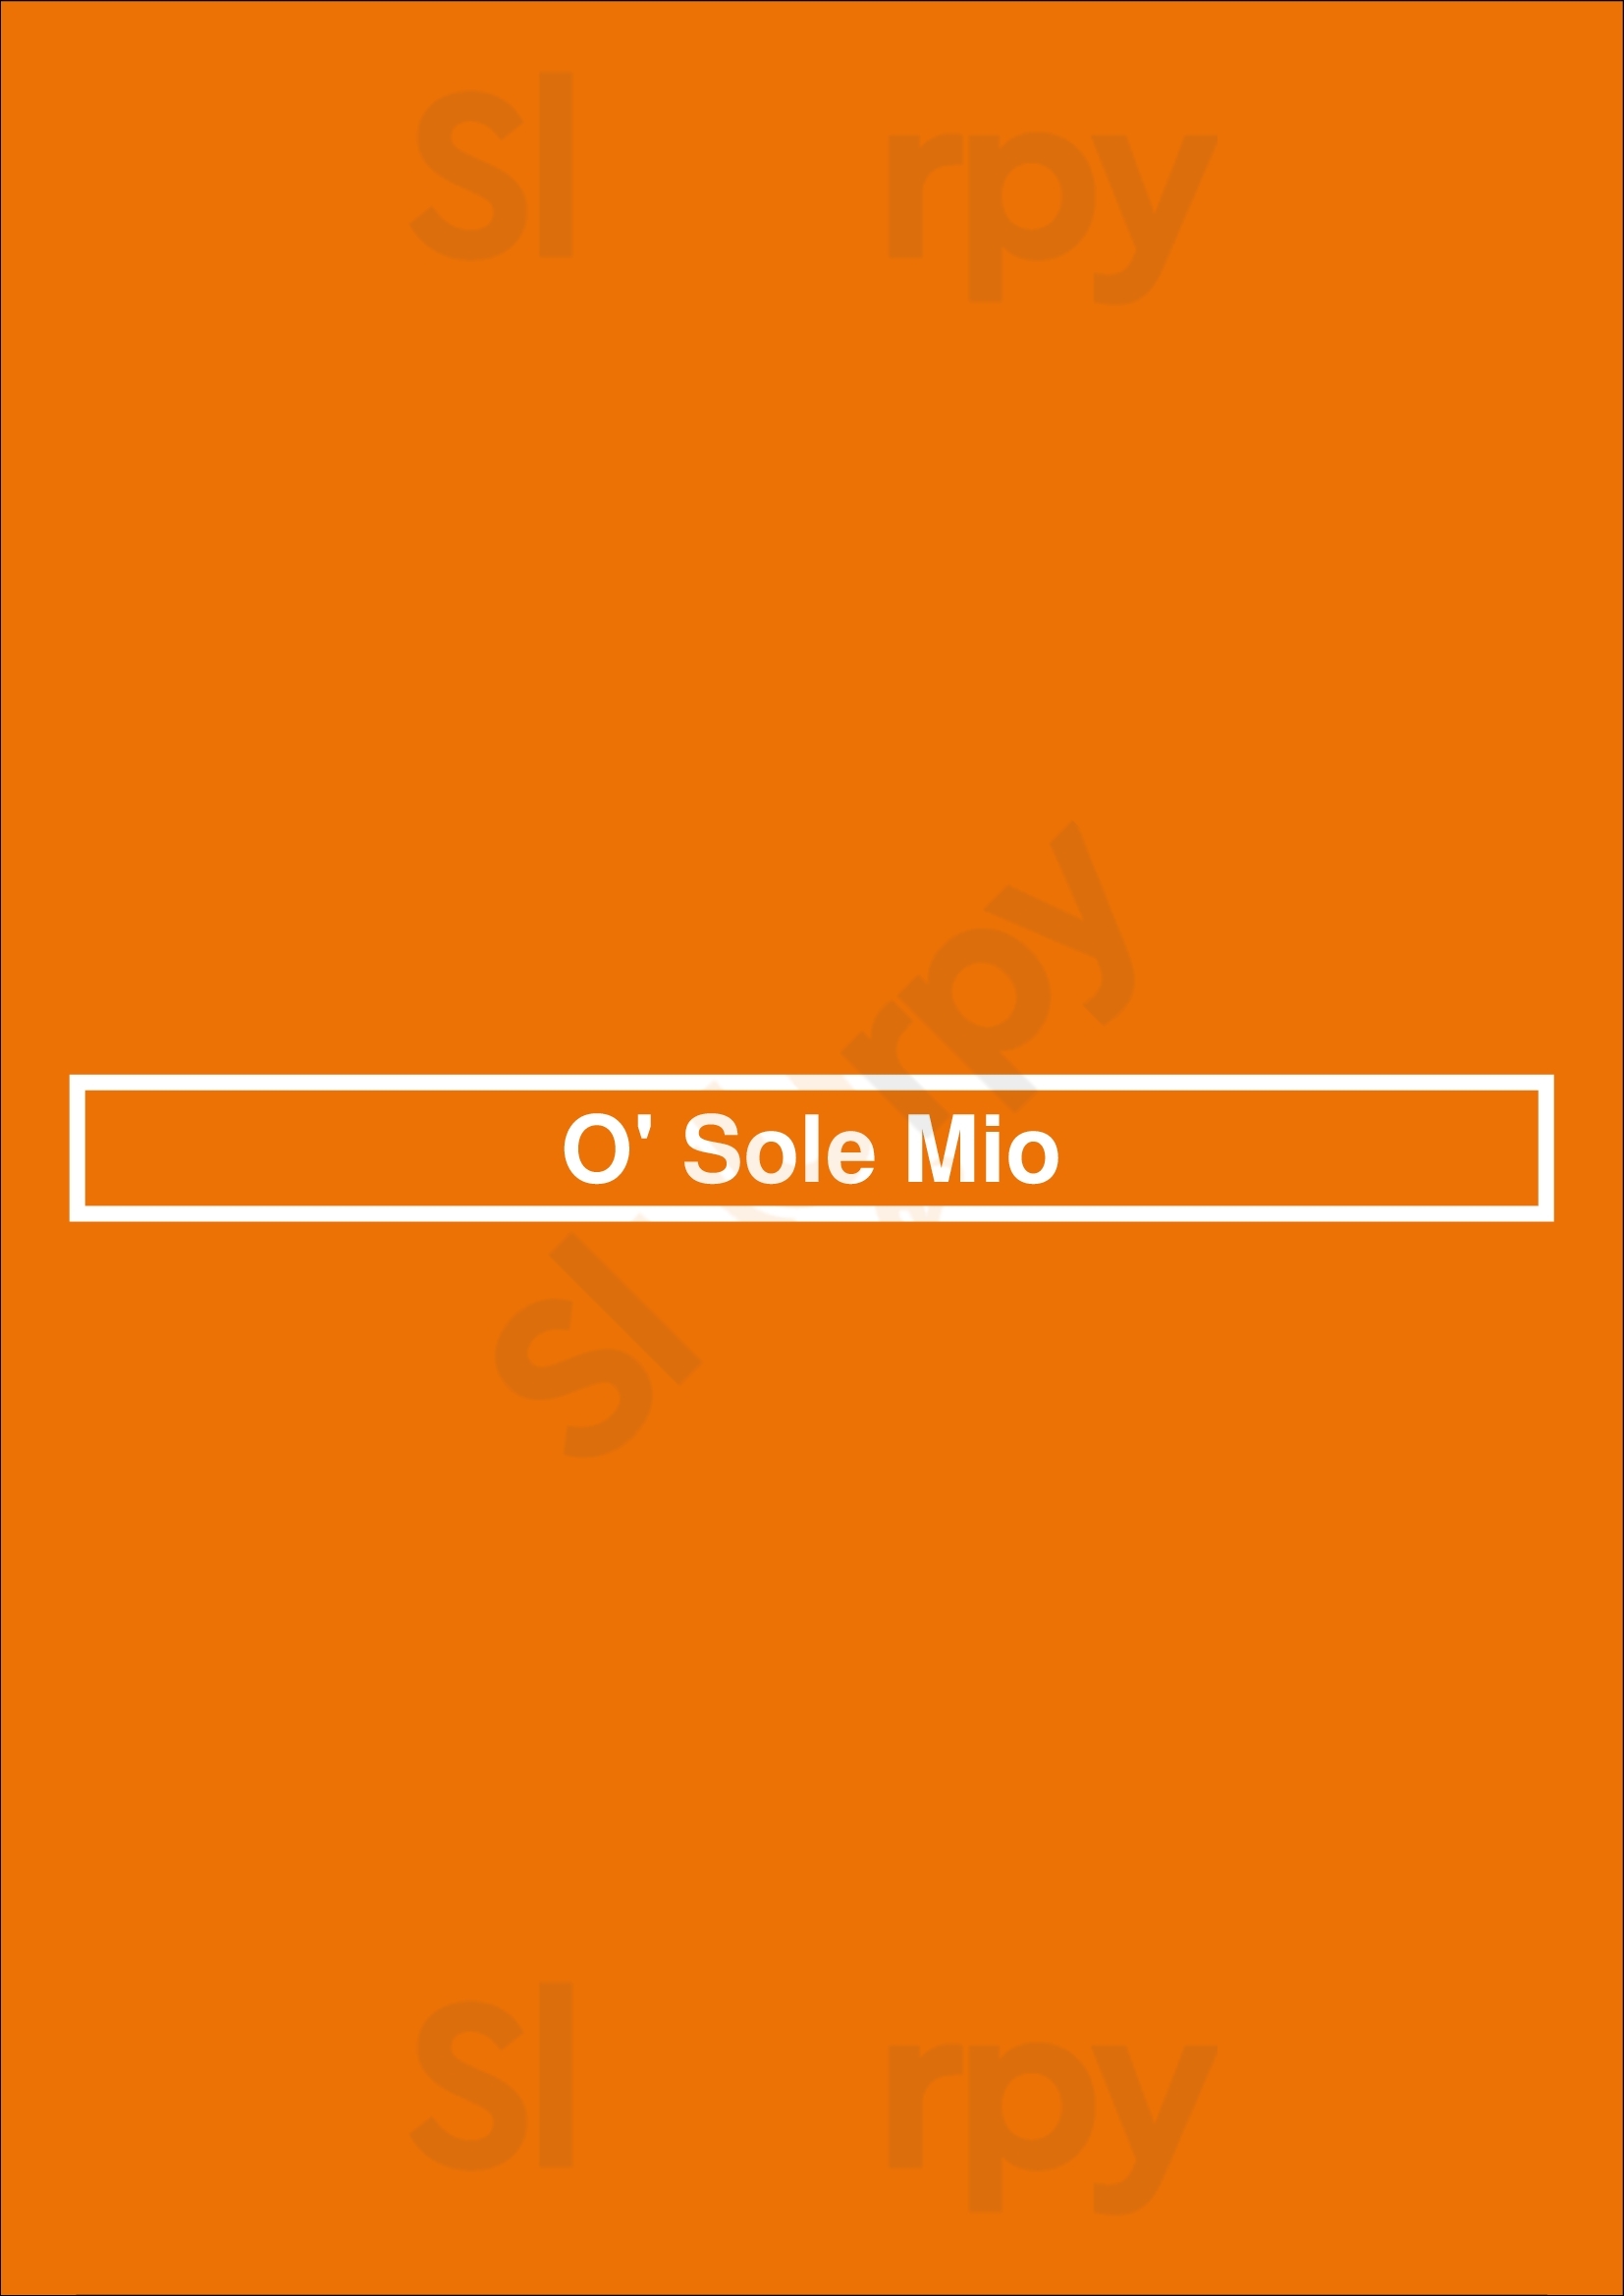 O' Sole Mio Liège Menu - 1